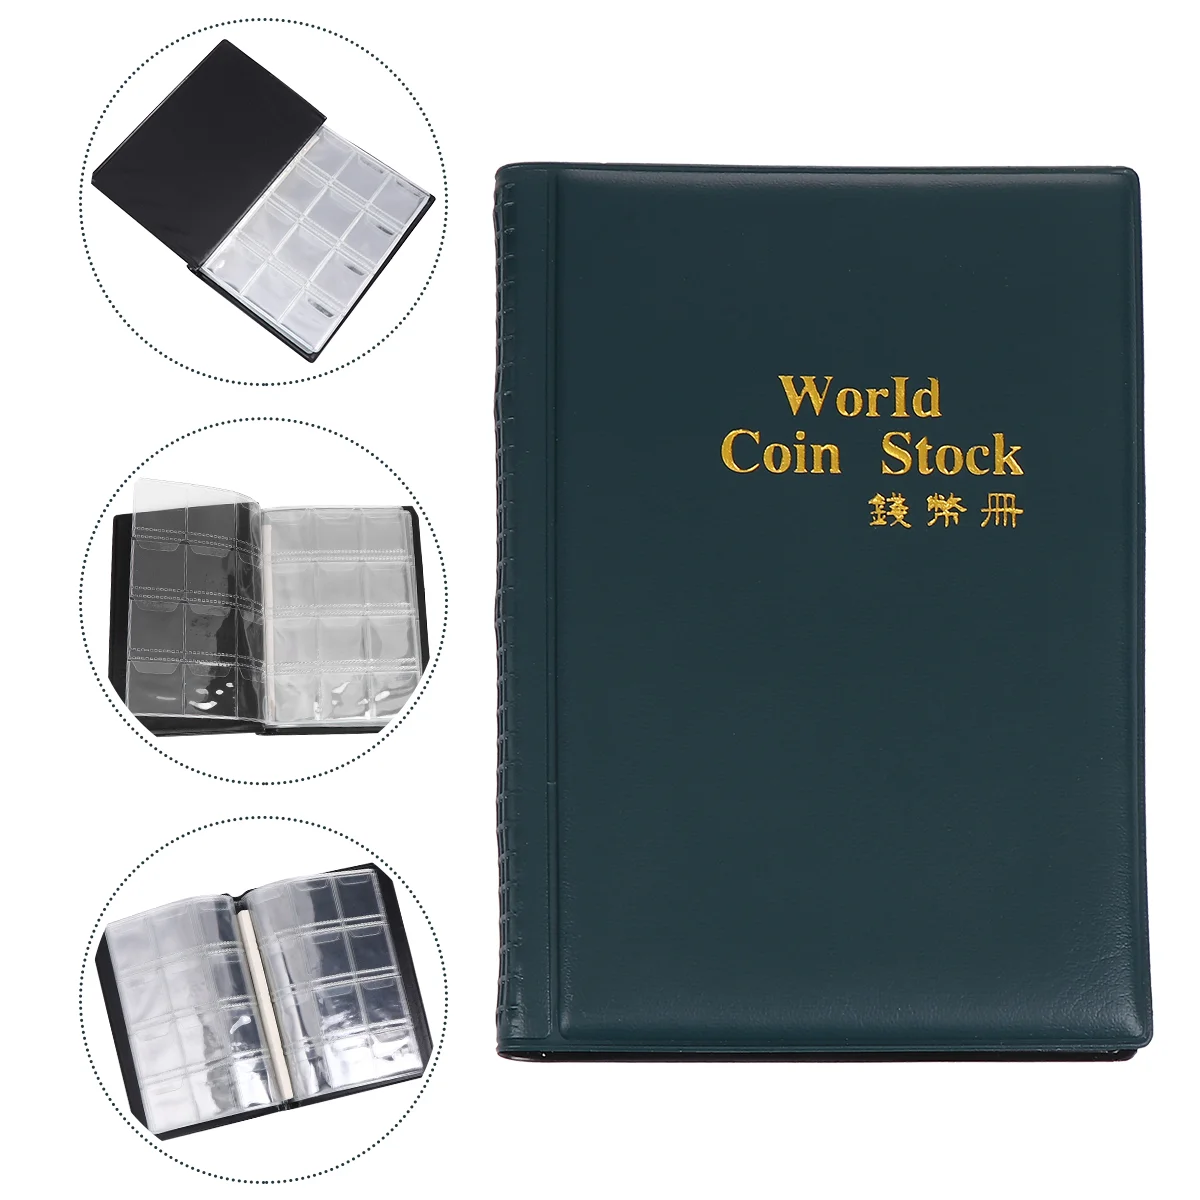 

Альбом для хранения монет 120, альбом для коллекционирования монет, держатели для монет, простой органайзер для монет, коллекционер юбилейны...